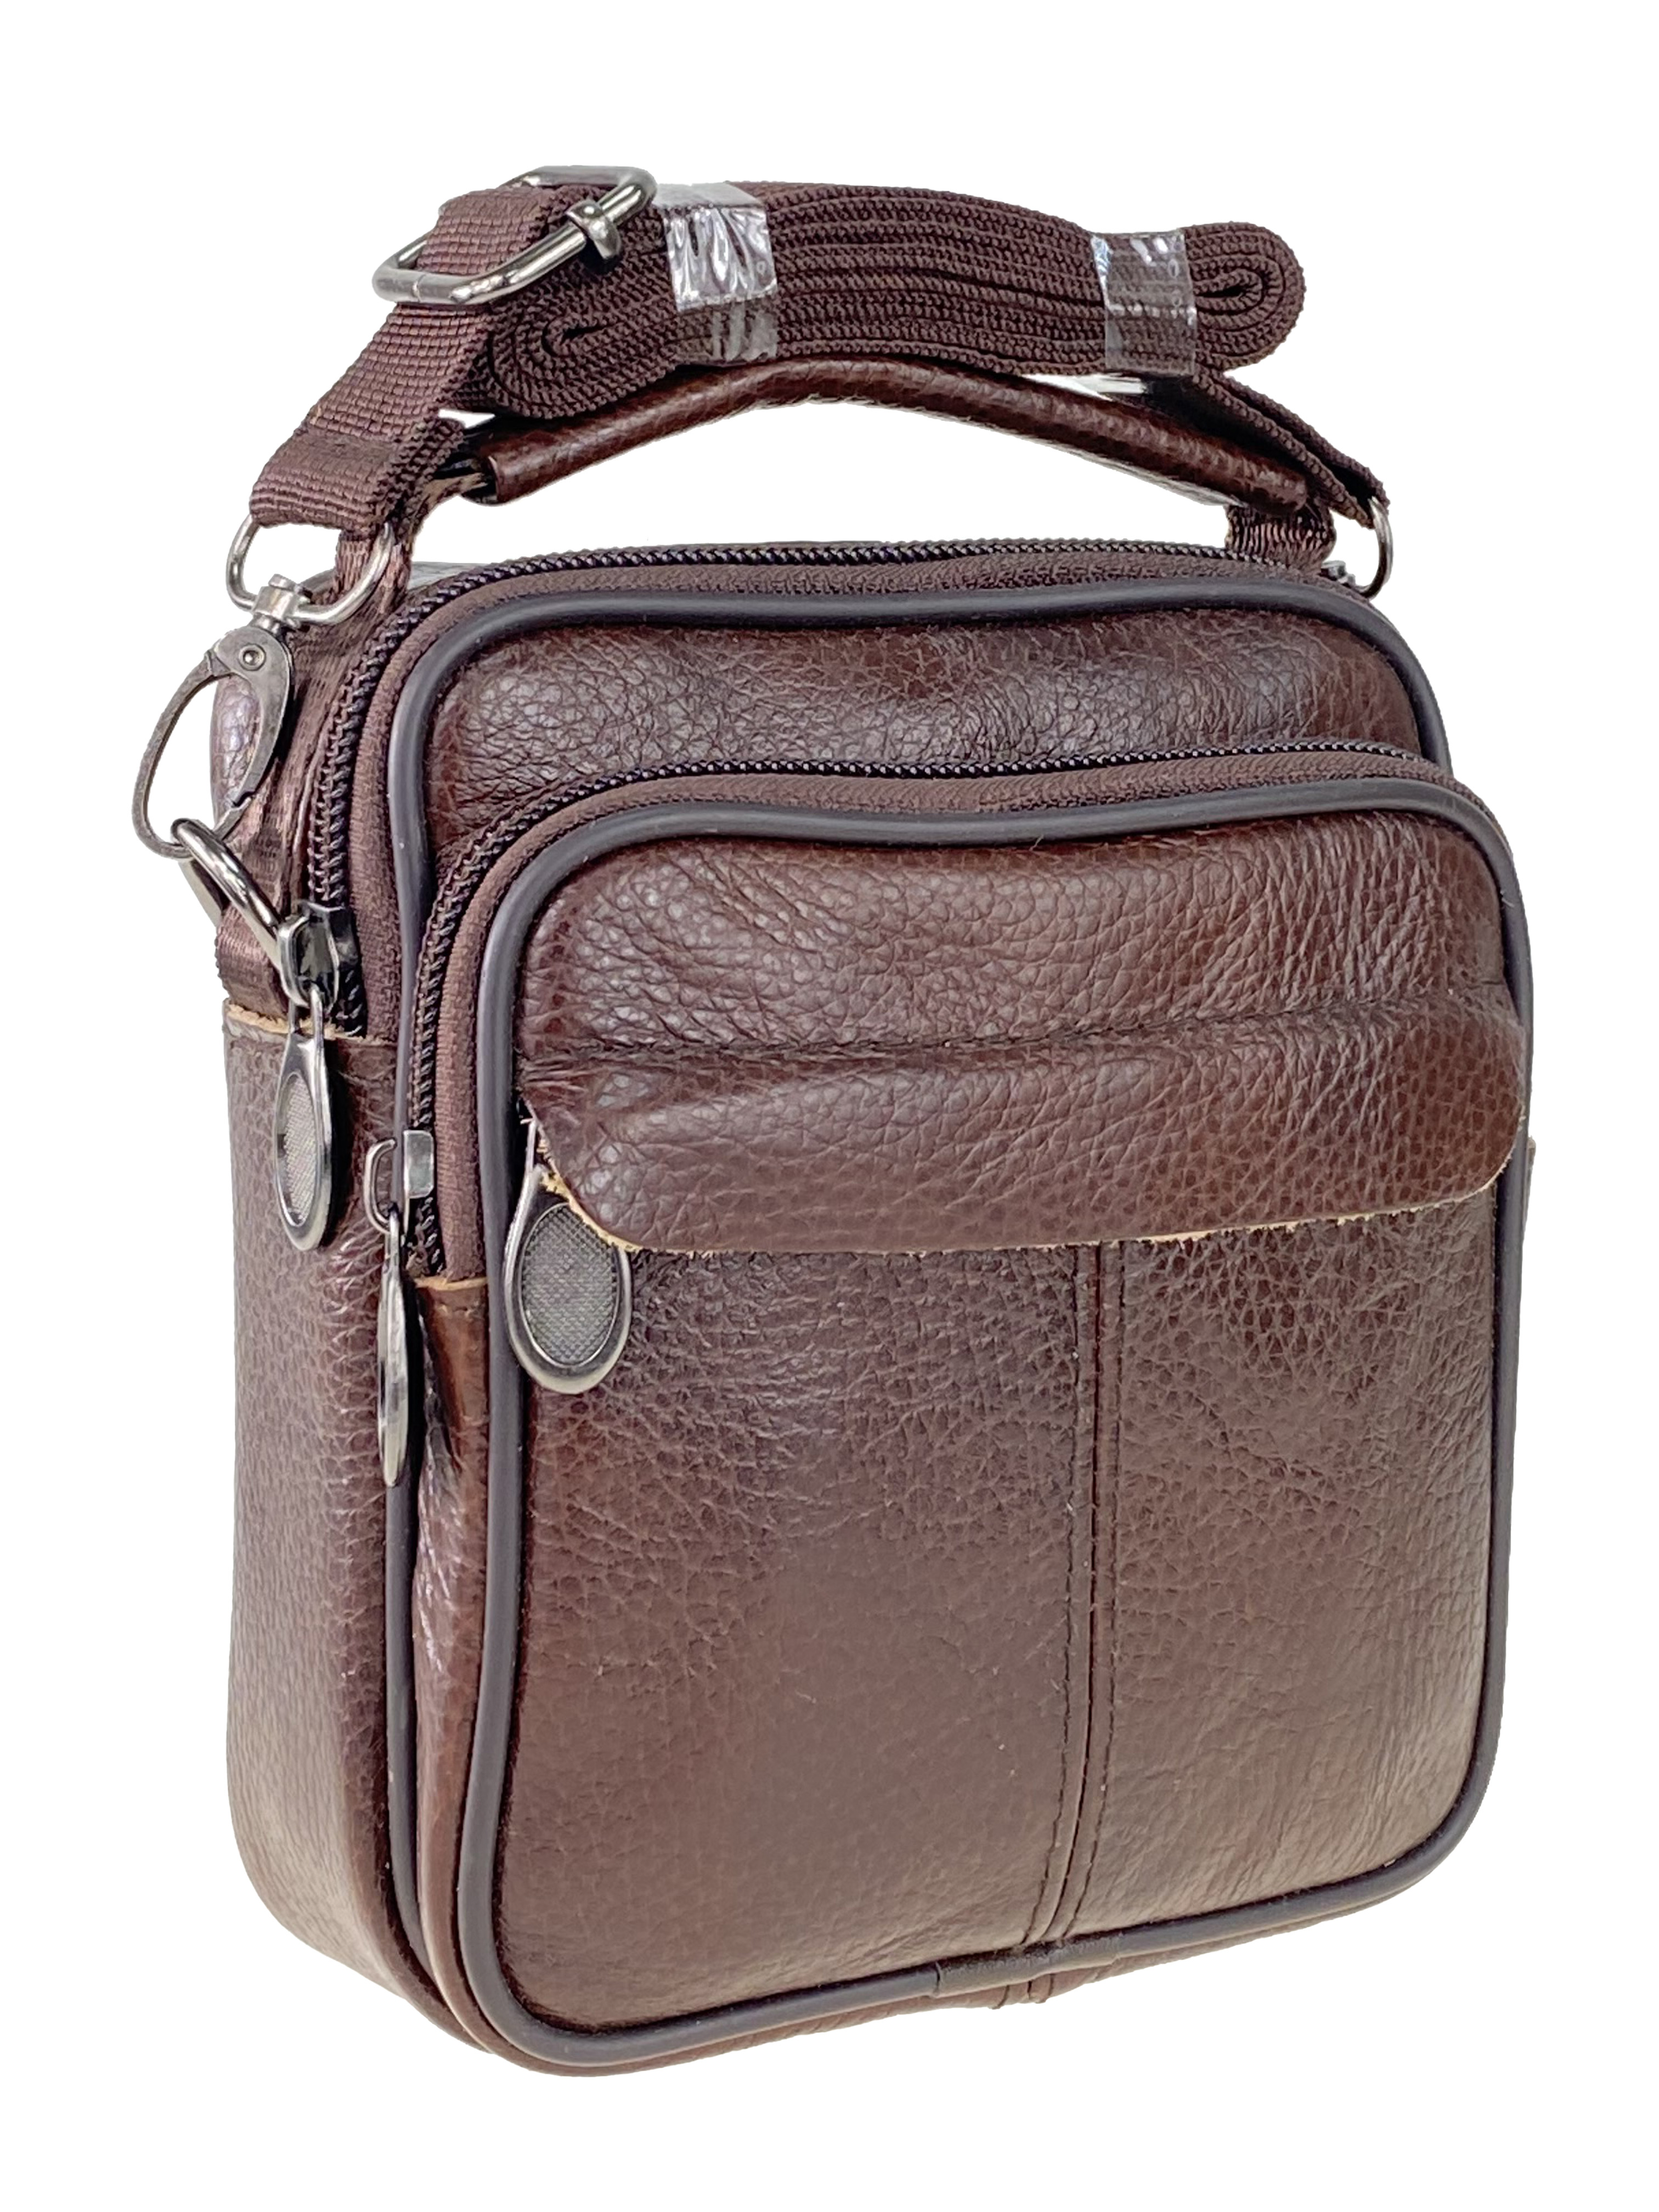 Мужская сумка на пояс из фактурной натуральной кожи, цвет коричневый